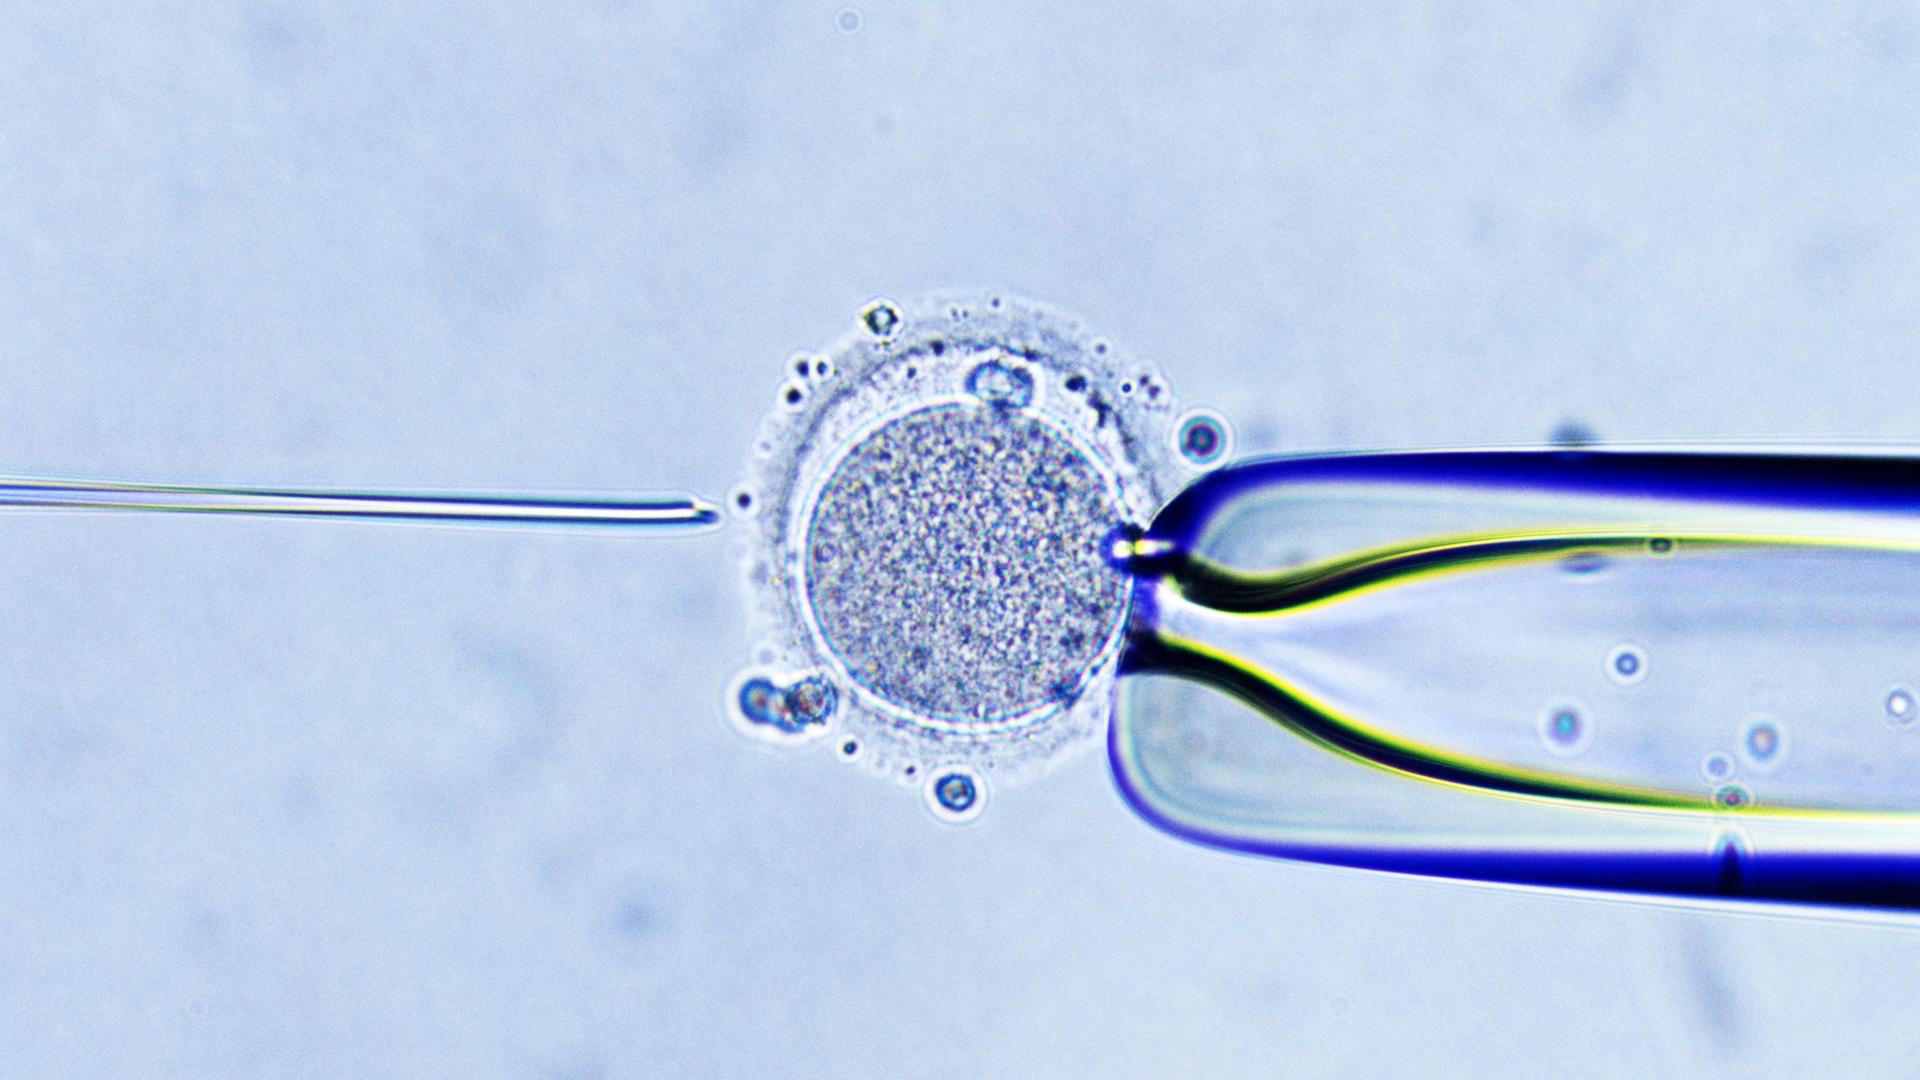 Eine Mikroskopaufnahme der Injektion von einem Spermium in eine Eizelle.